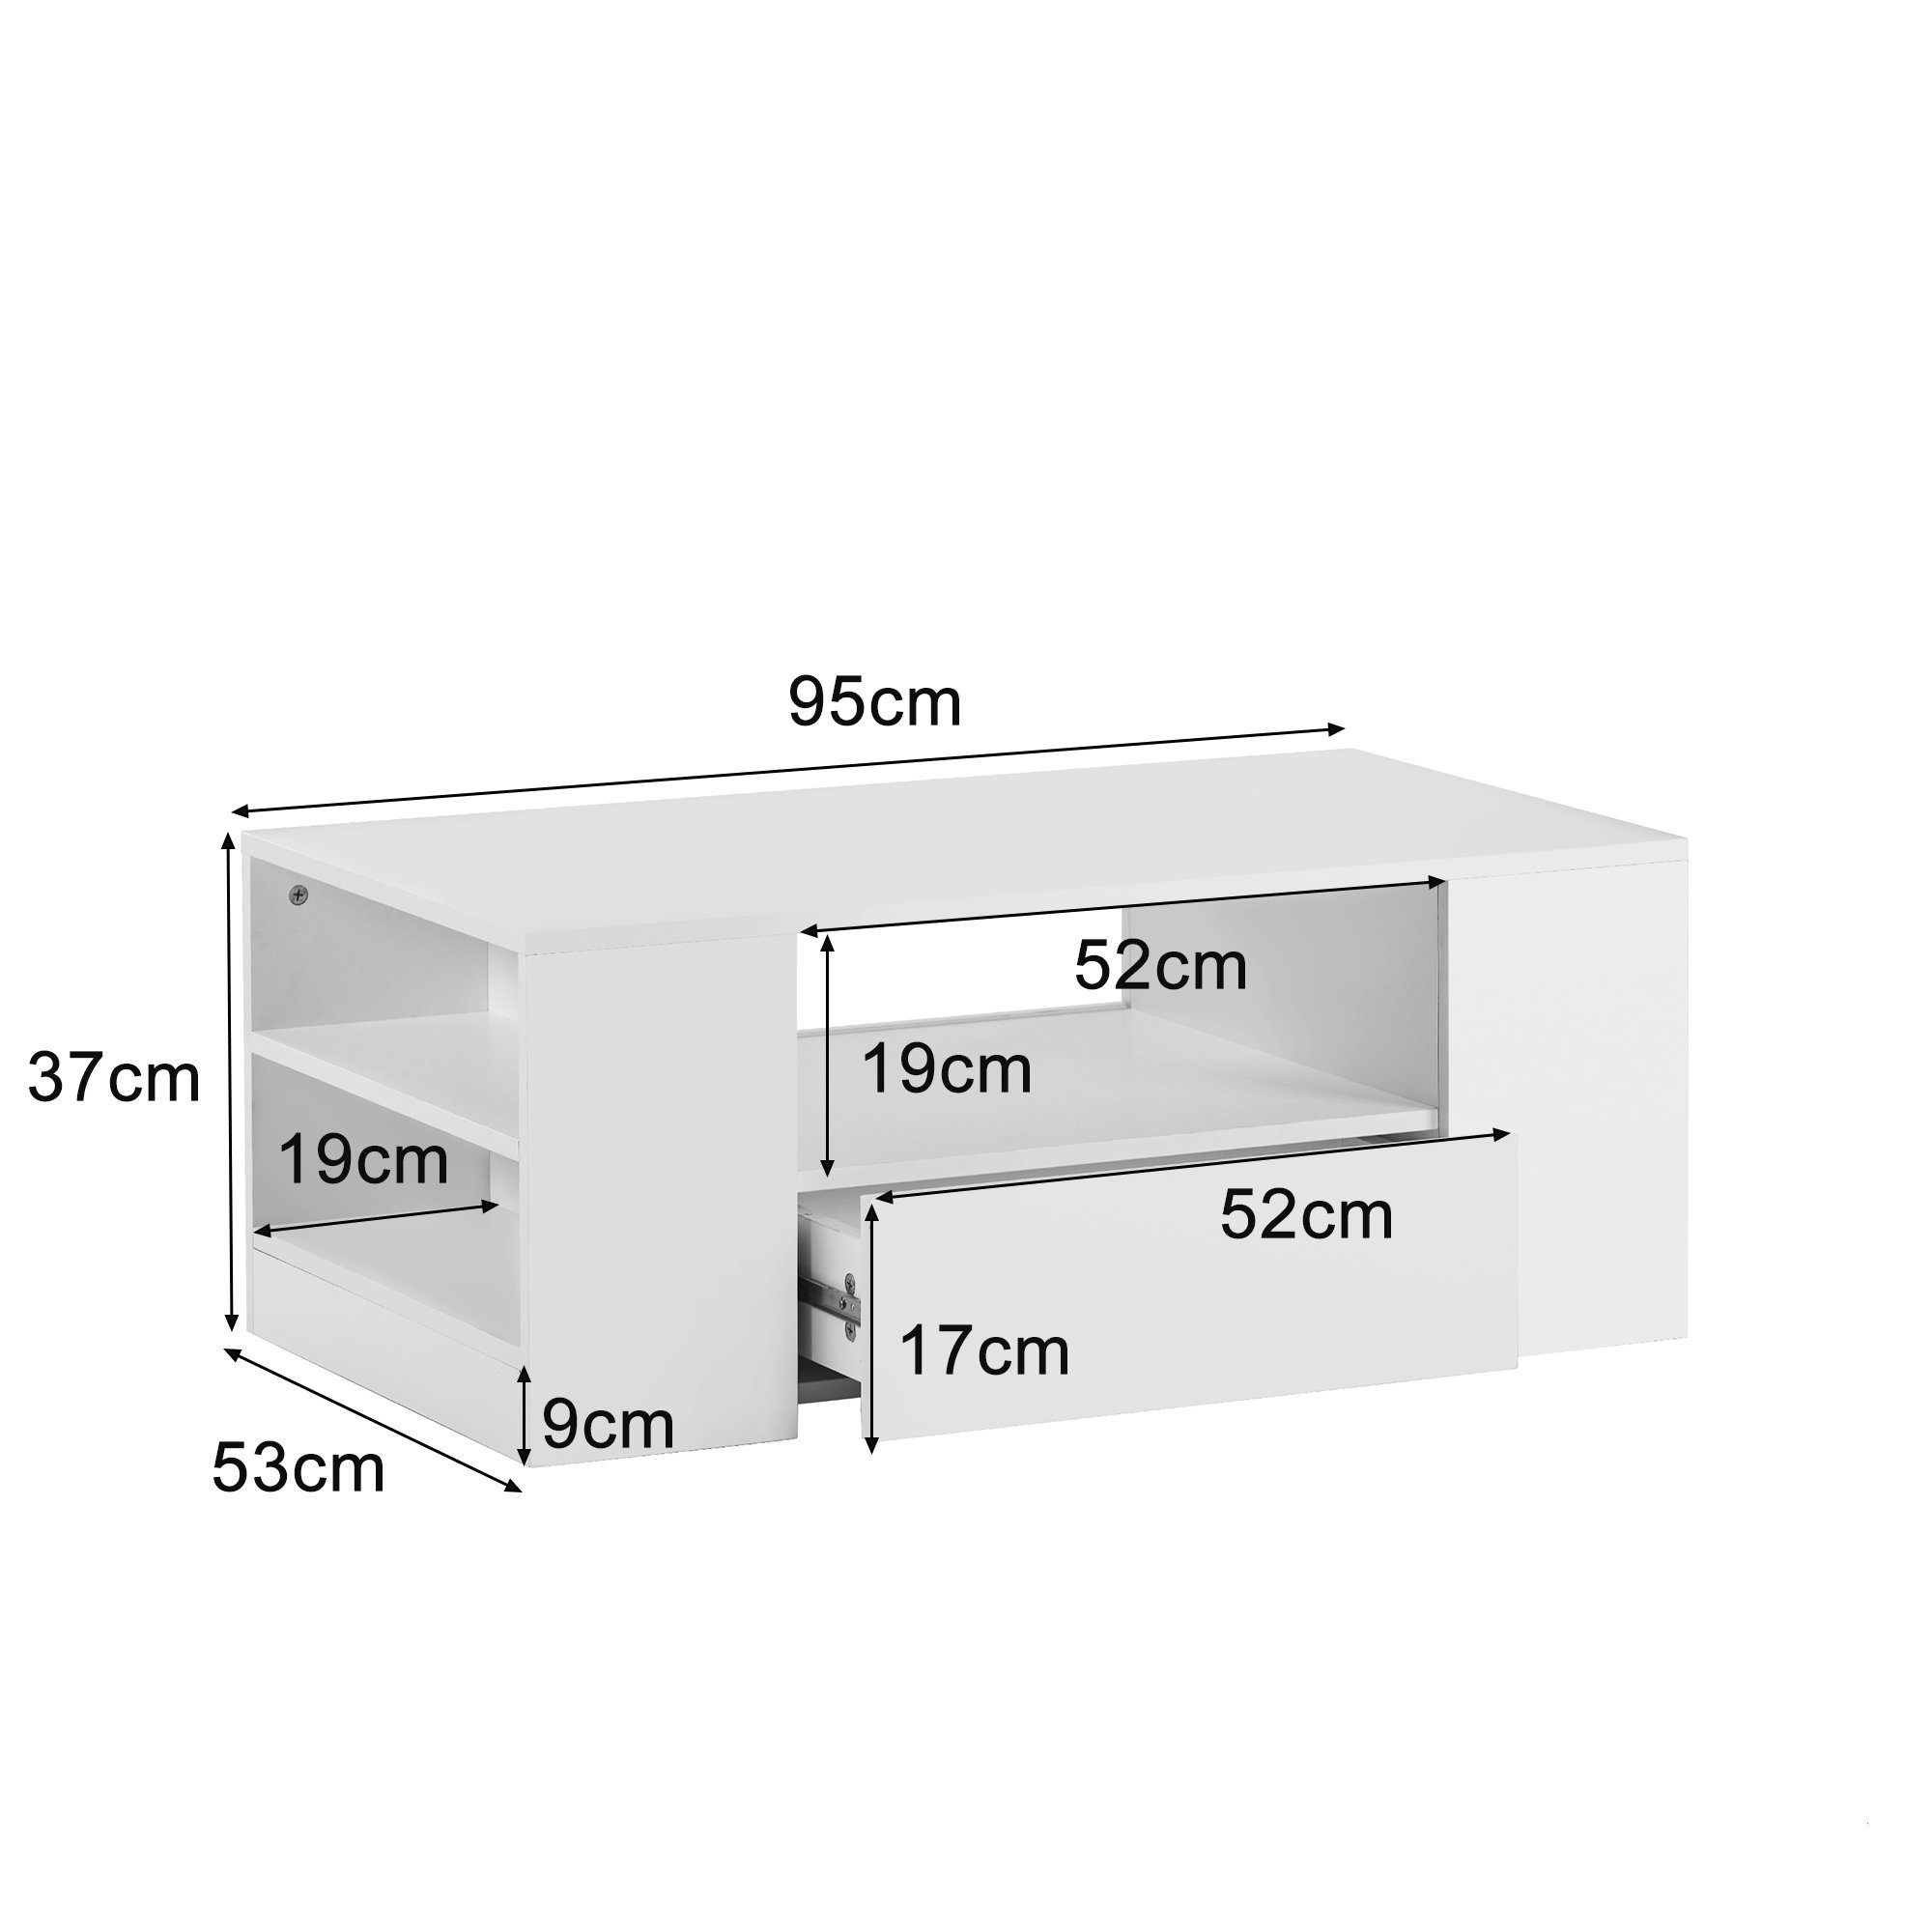 Regalsofa Weiß Couchtisch 2 2 37cm mit Zeitgenössisches Schubladen x 53 hochglanz Flachverpackung OKWISH Sofatisch Couchtisch Beistelltisch), (95 und x LED-Beleuchtung Design